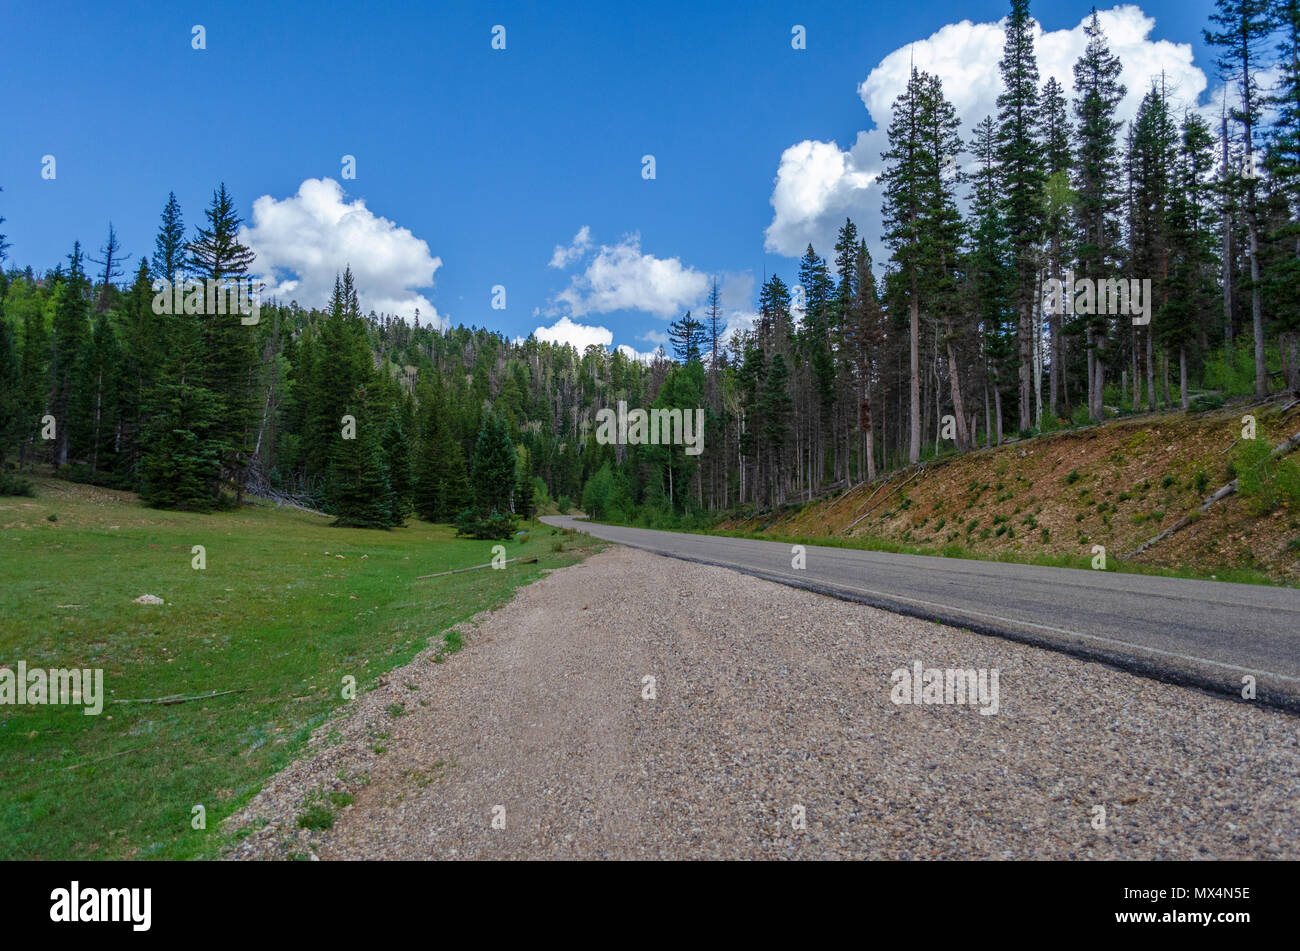 Sul lato sinistro della strada sulla ghiaia estrarre con verdi campi e foreste sotto il cielo blu con nuvole. Foto Stock